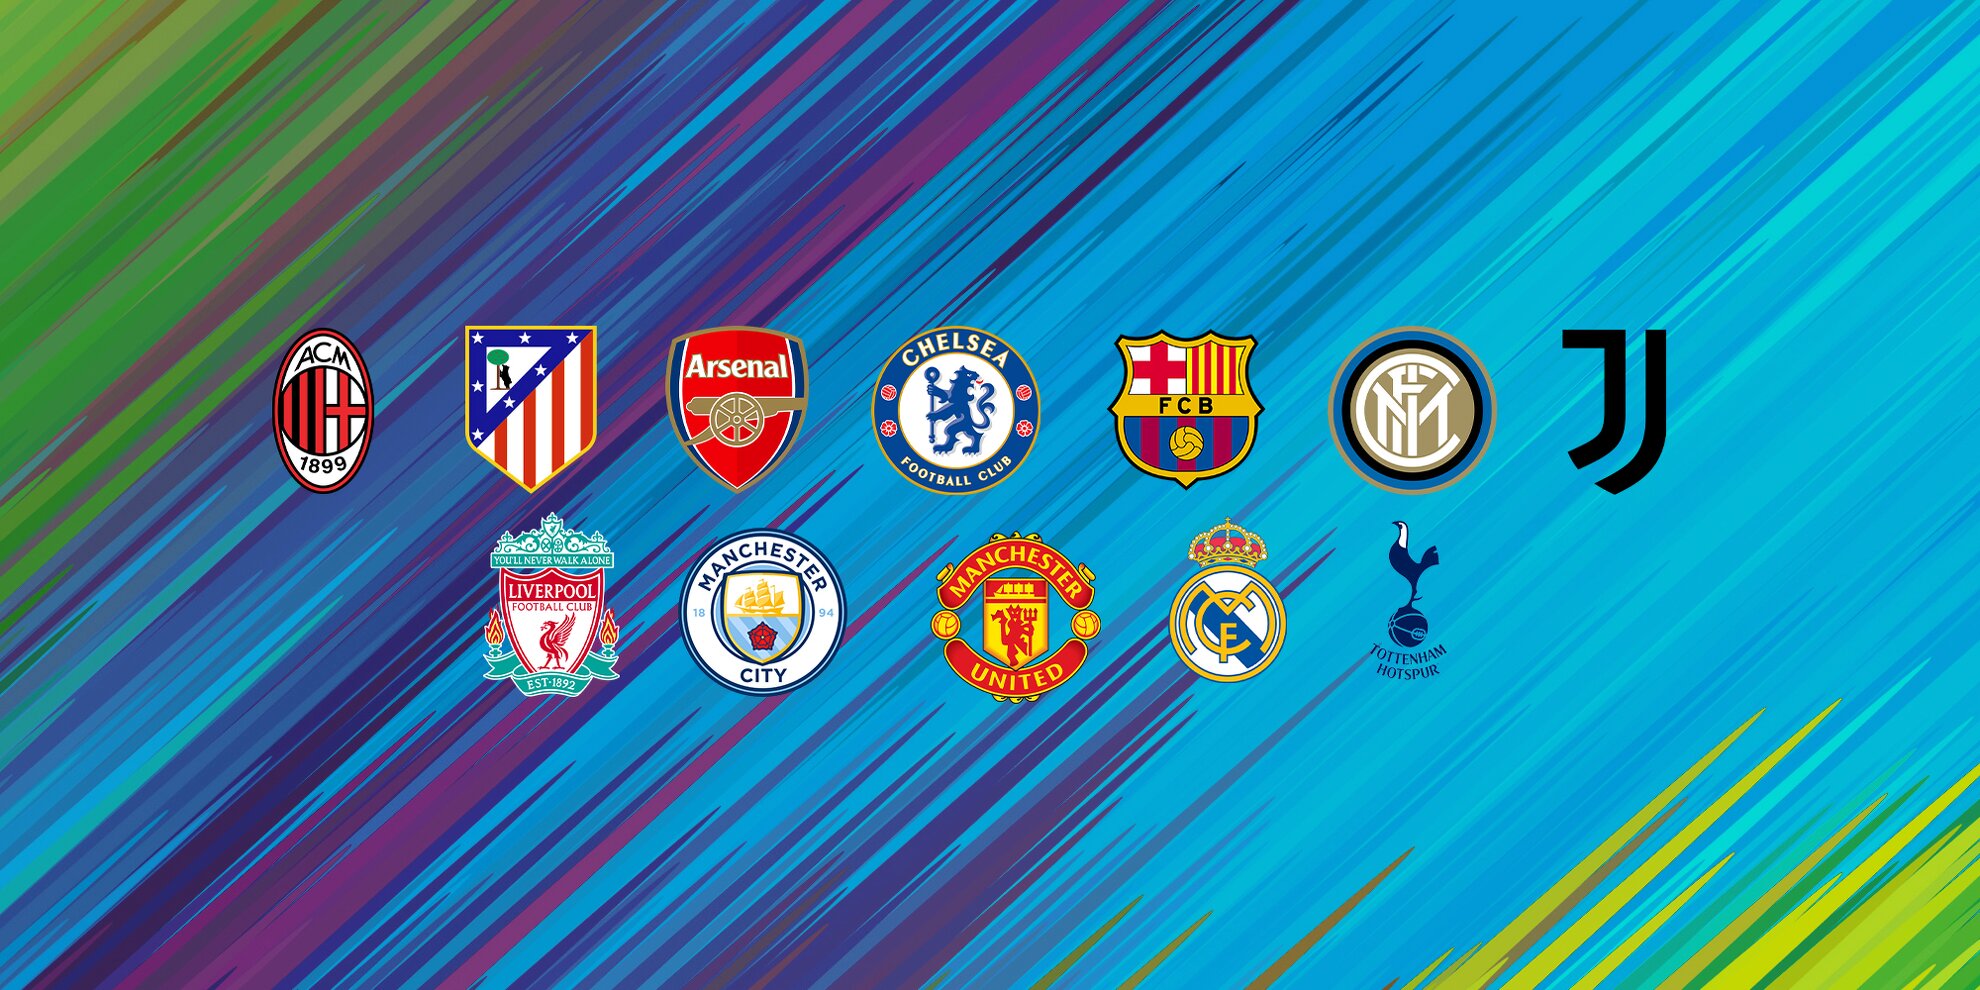 European Super League lead